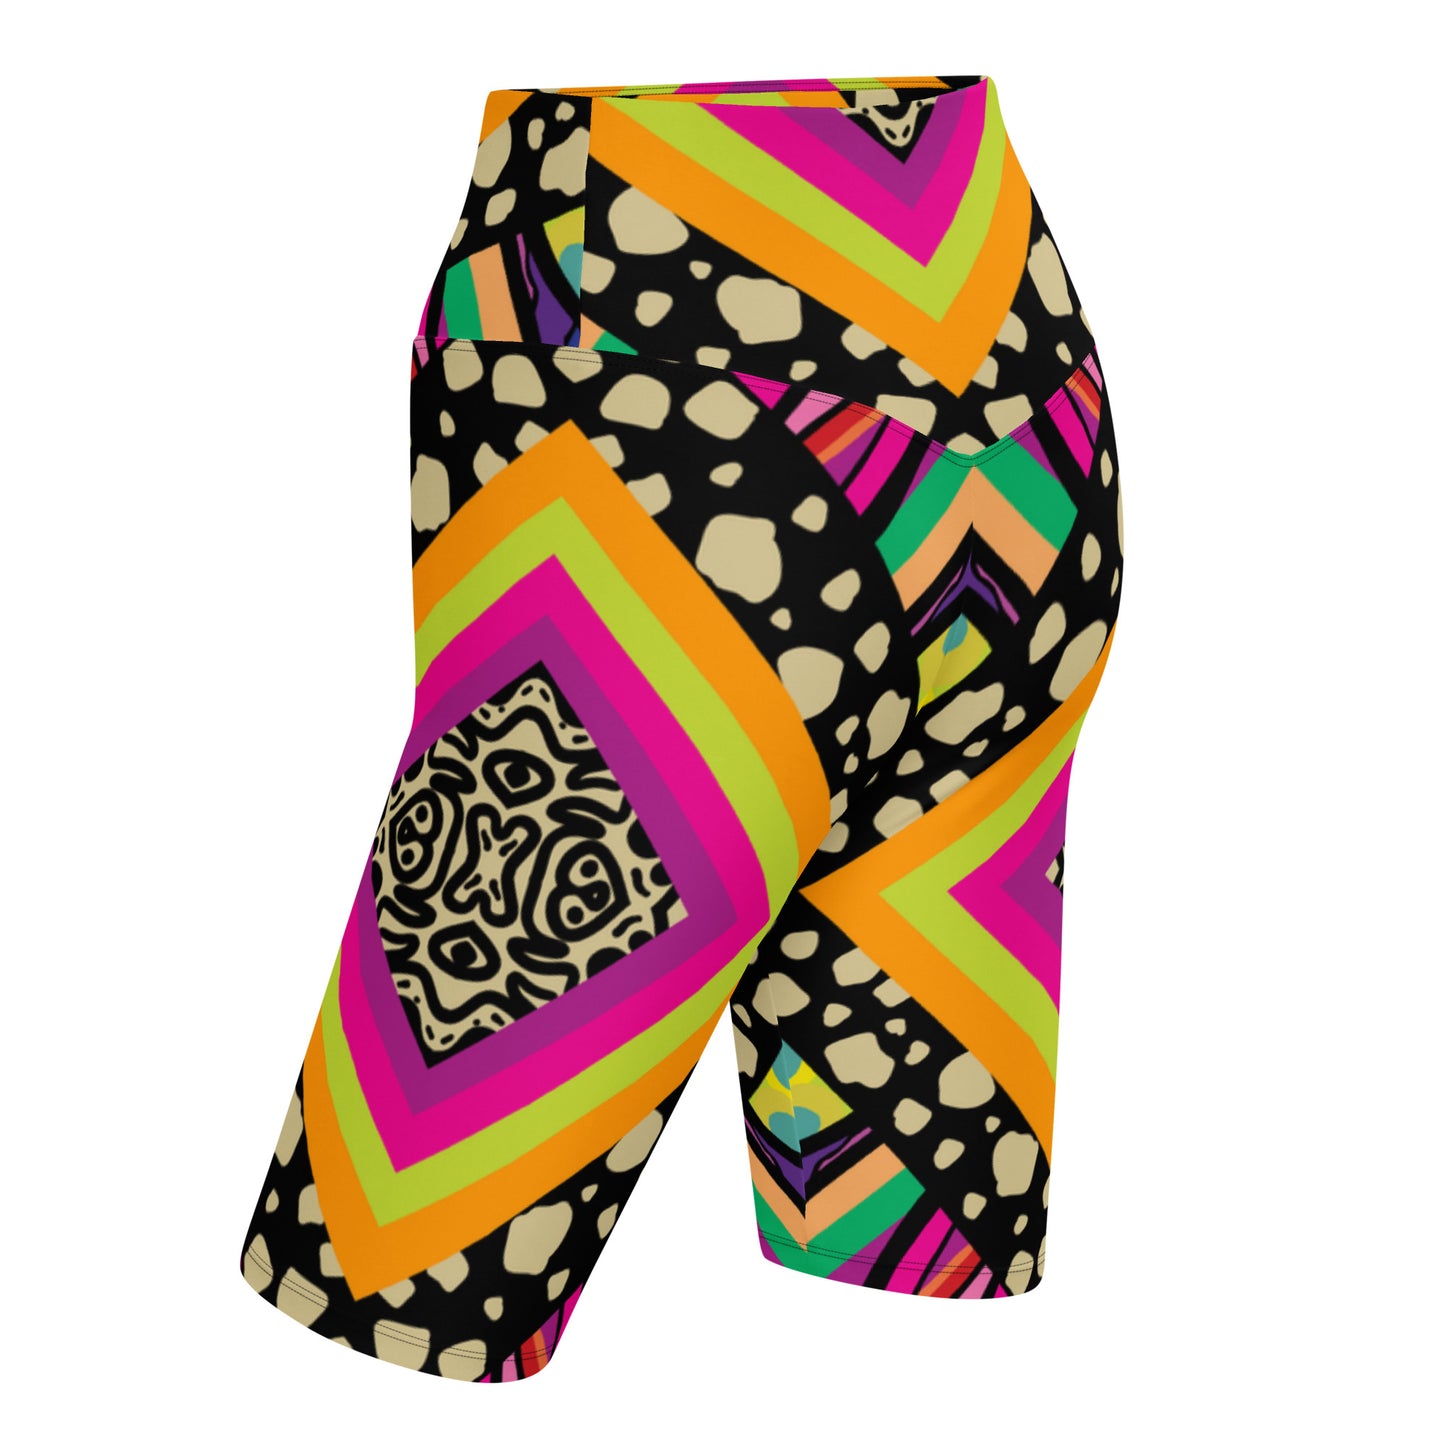 Mitchellopia Design- Biker Shorts